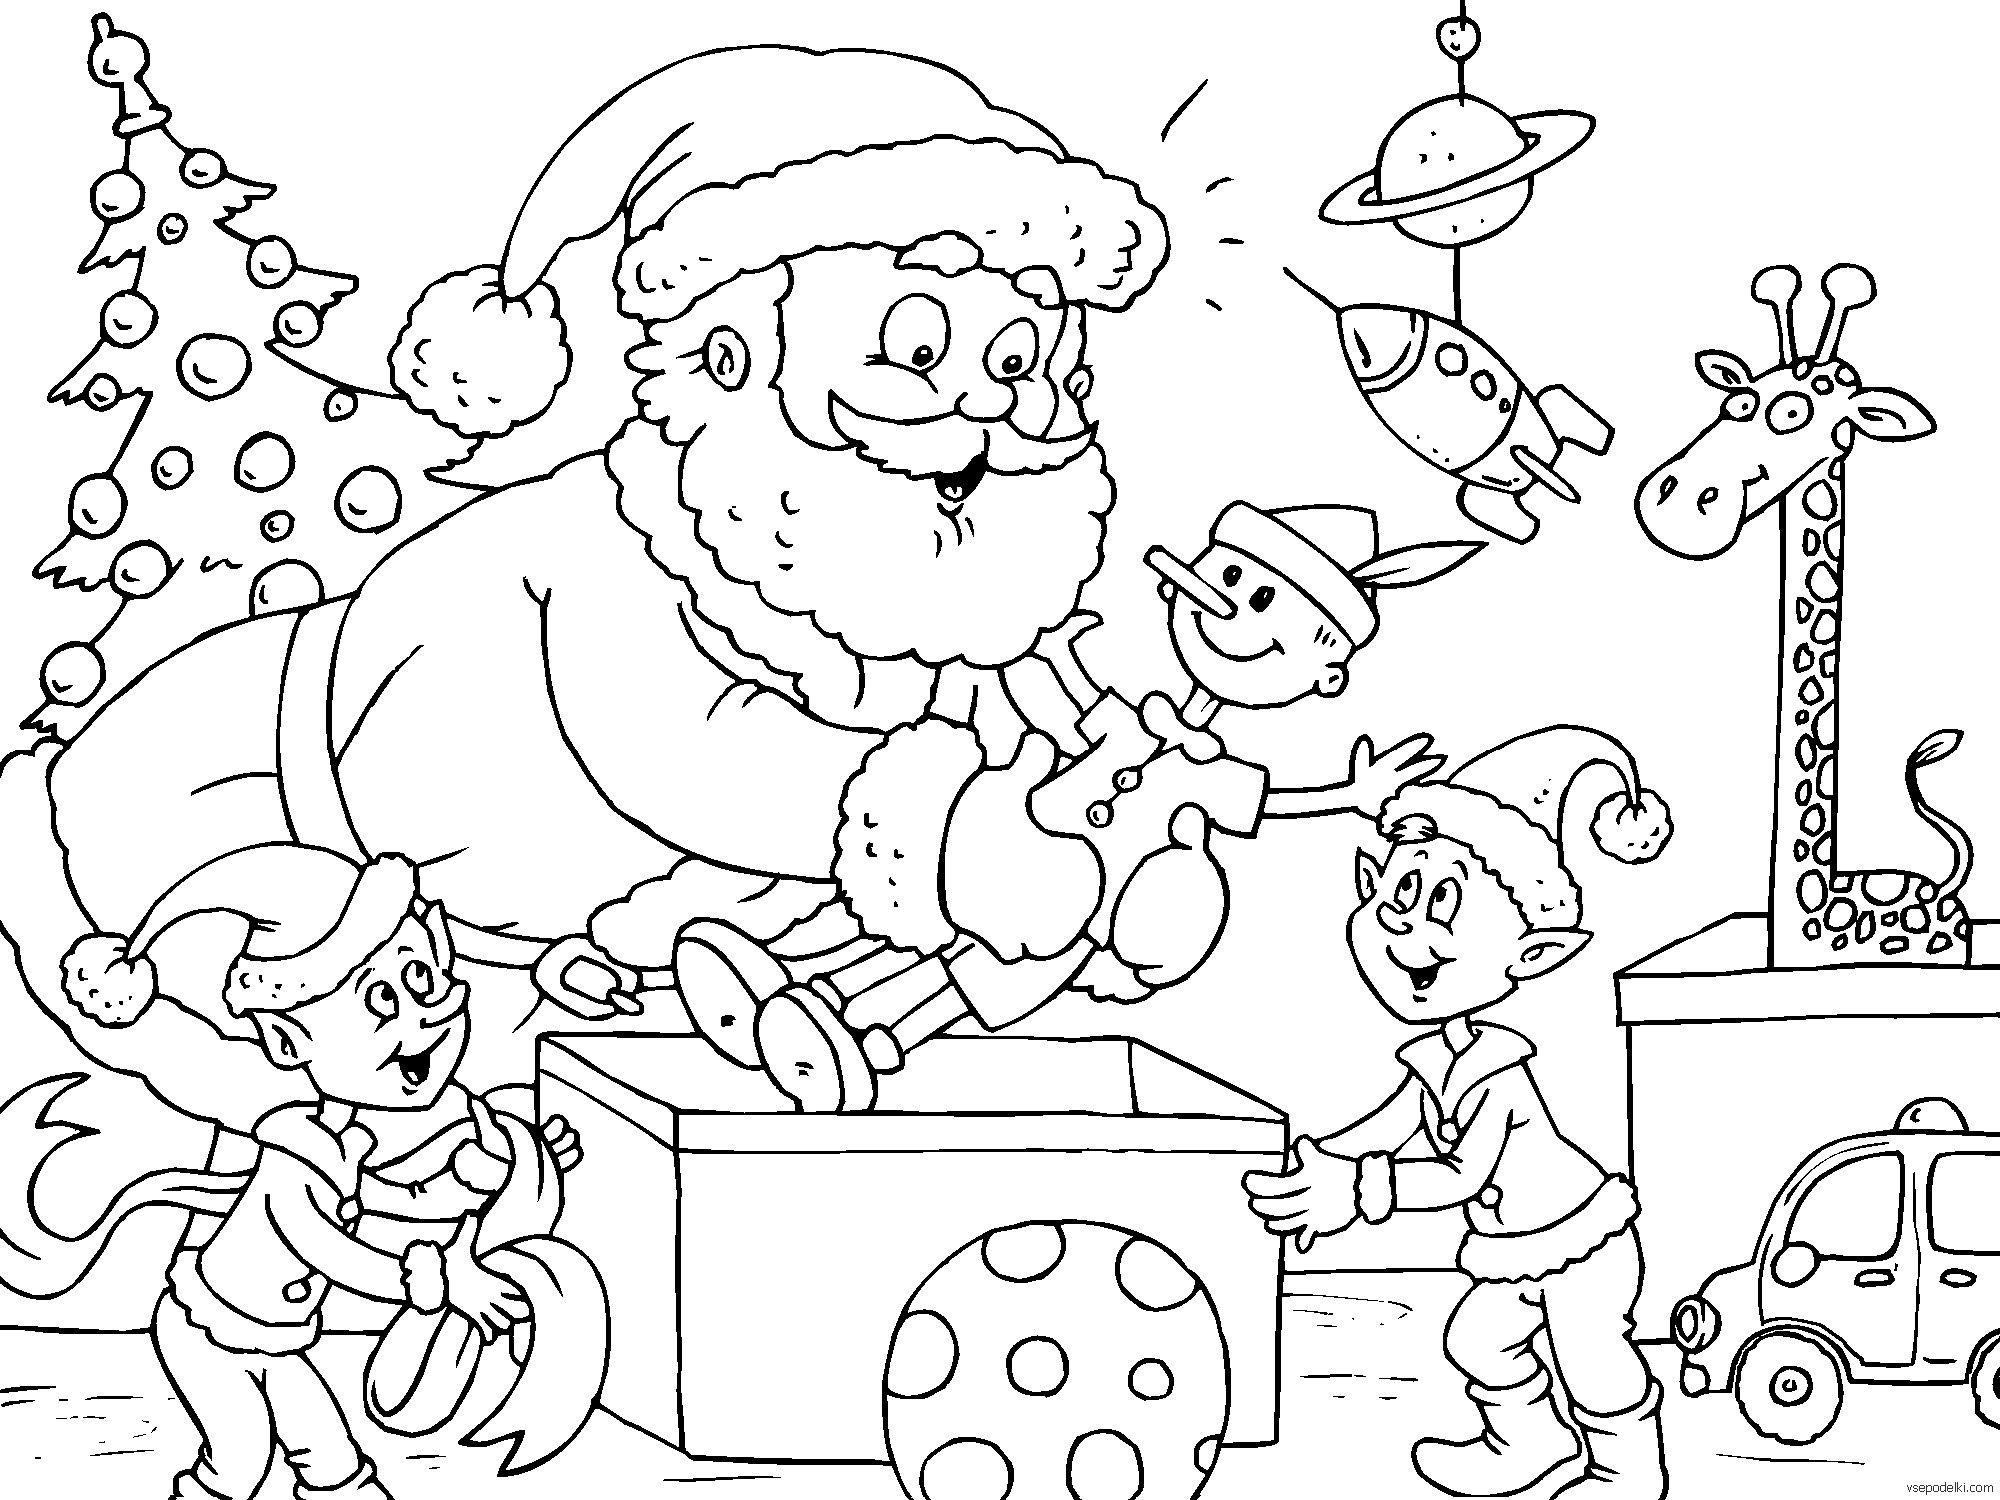 Дед Мороз раскраска для детей